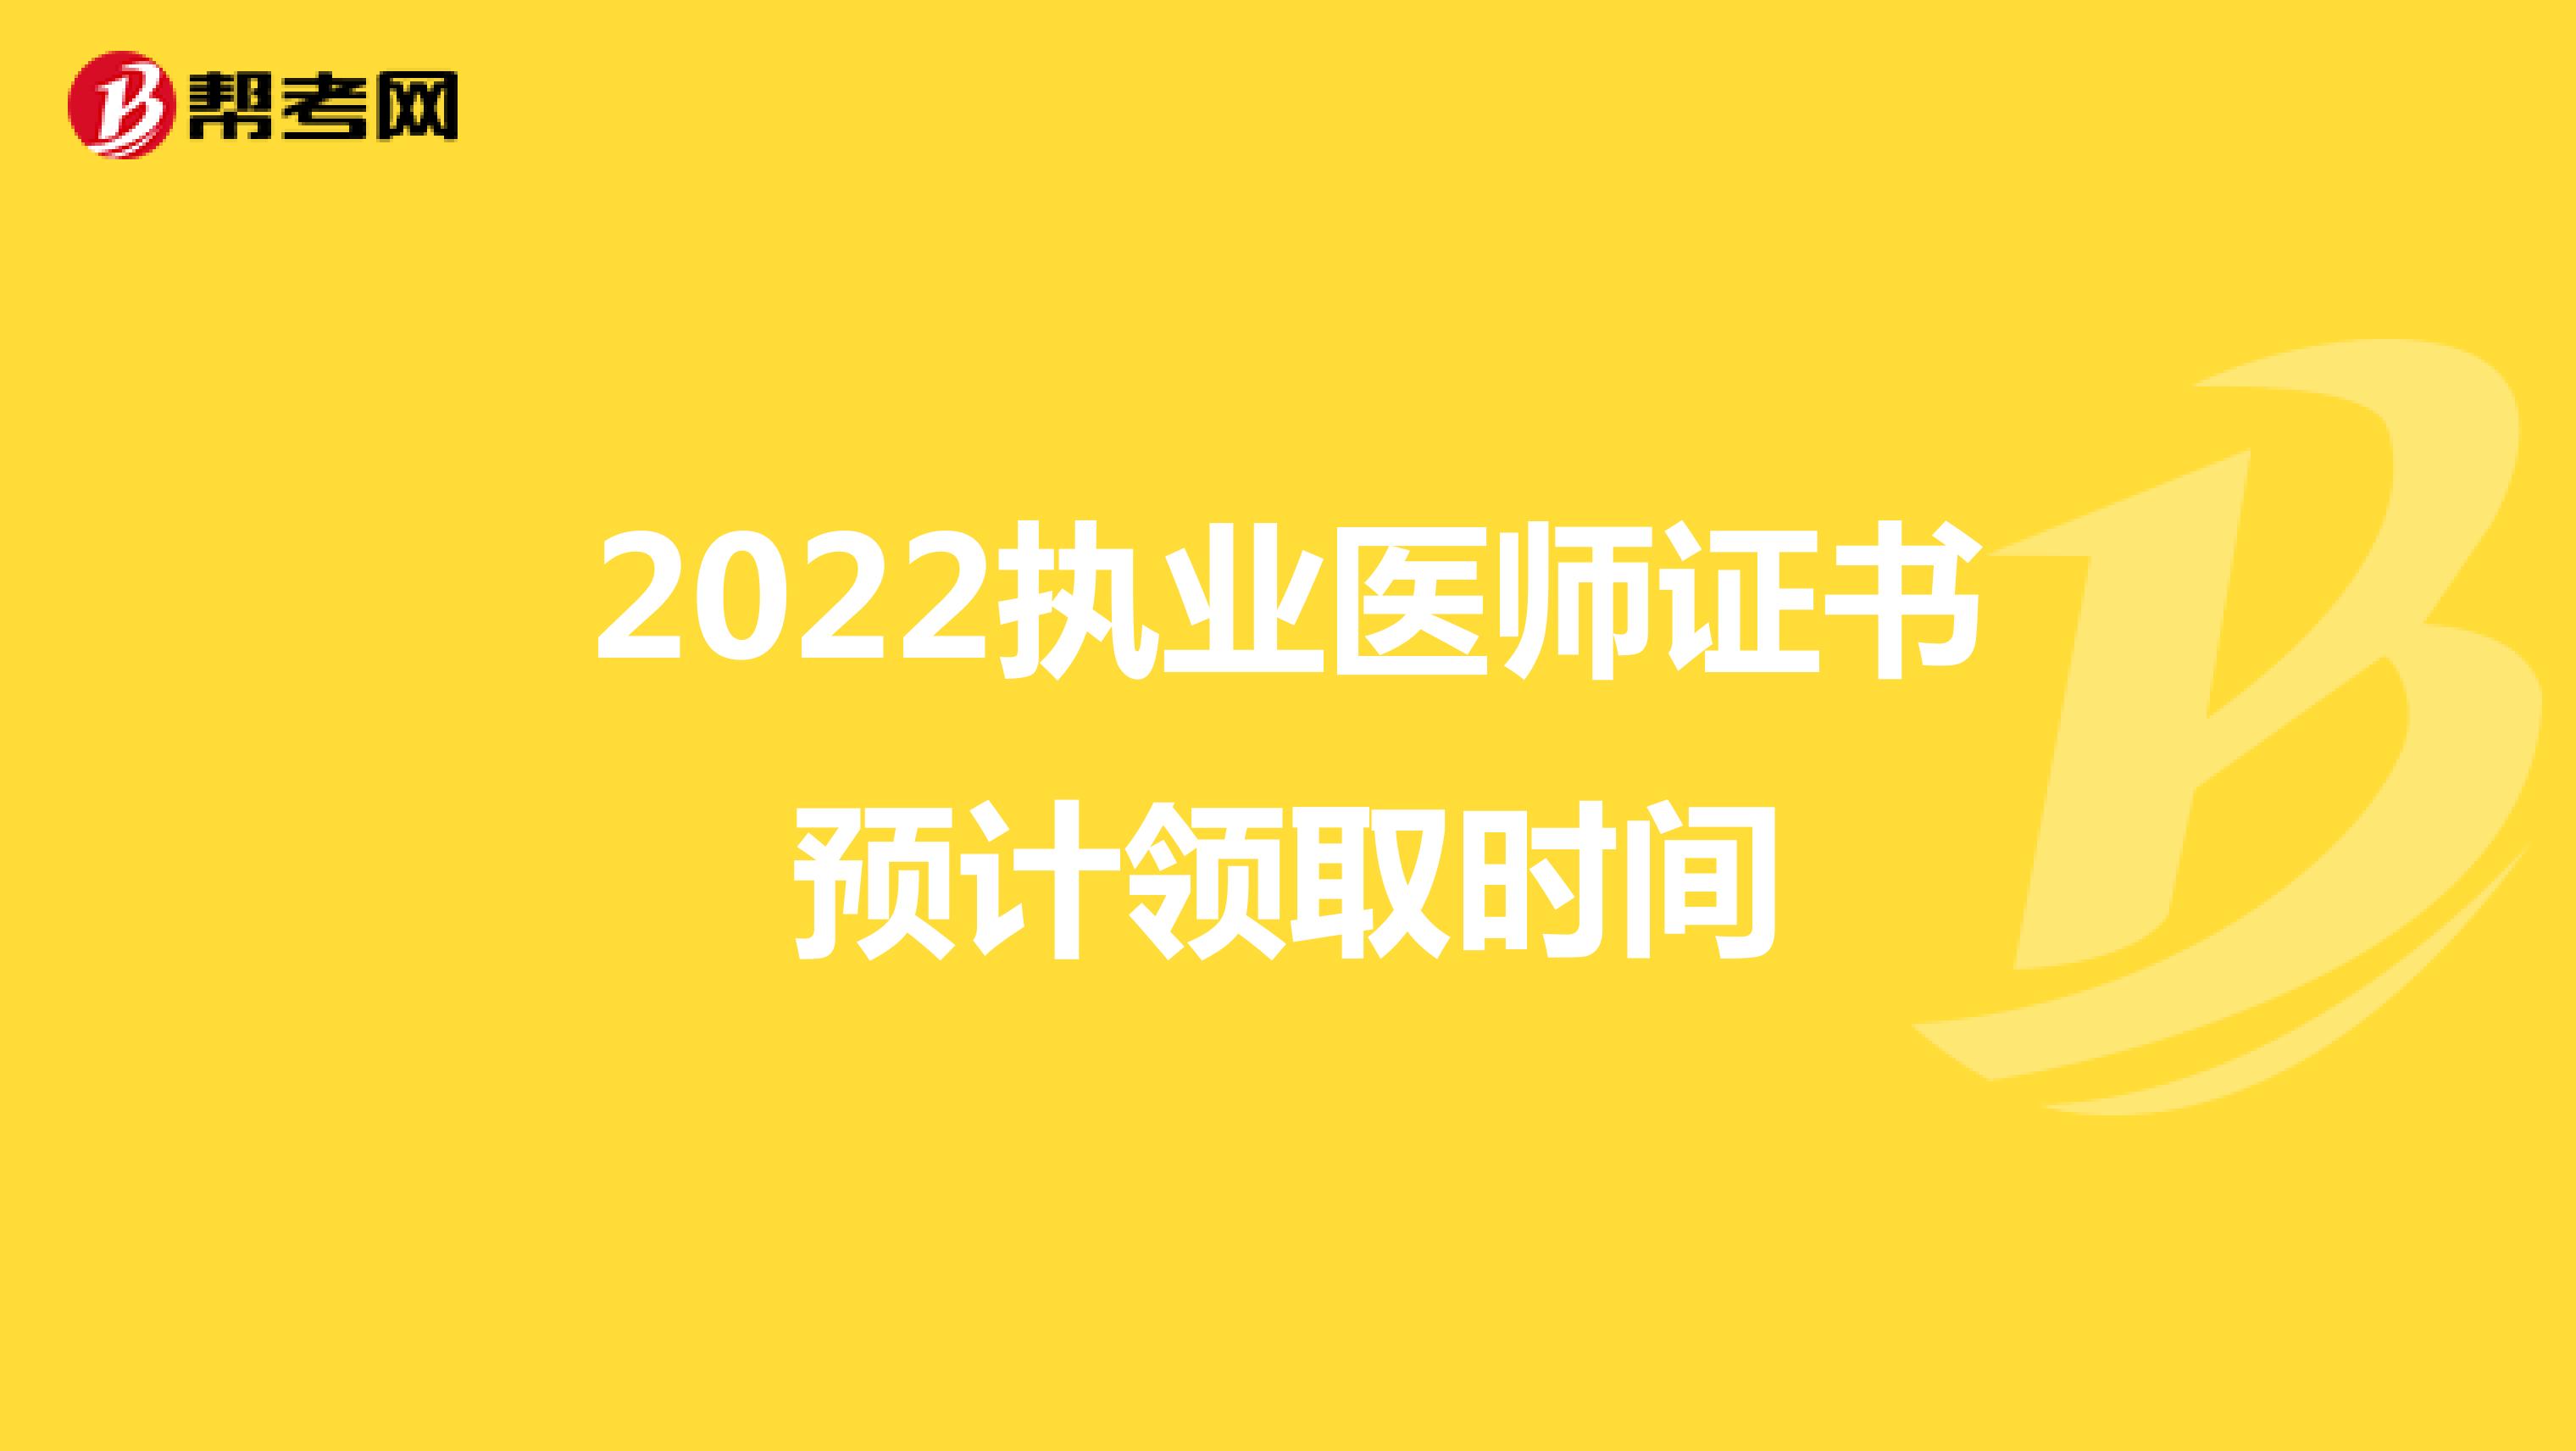 2022执业医师证书预计领取时间